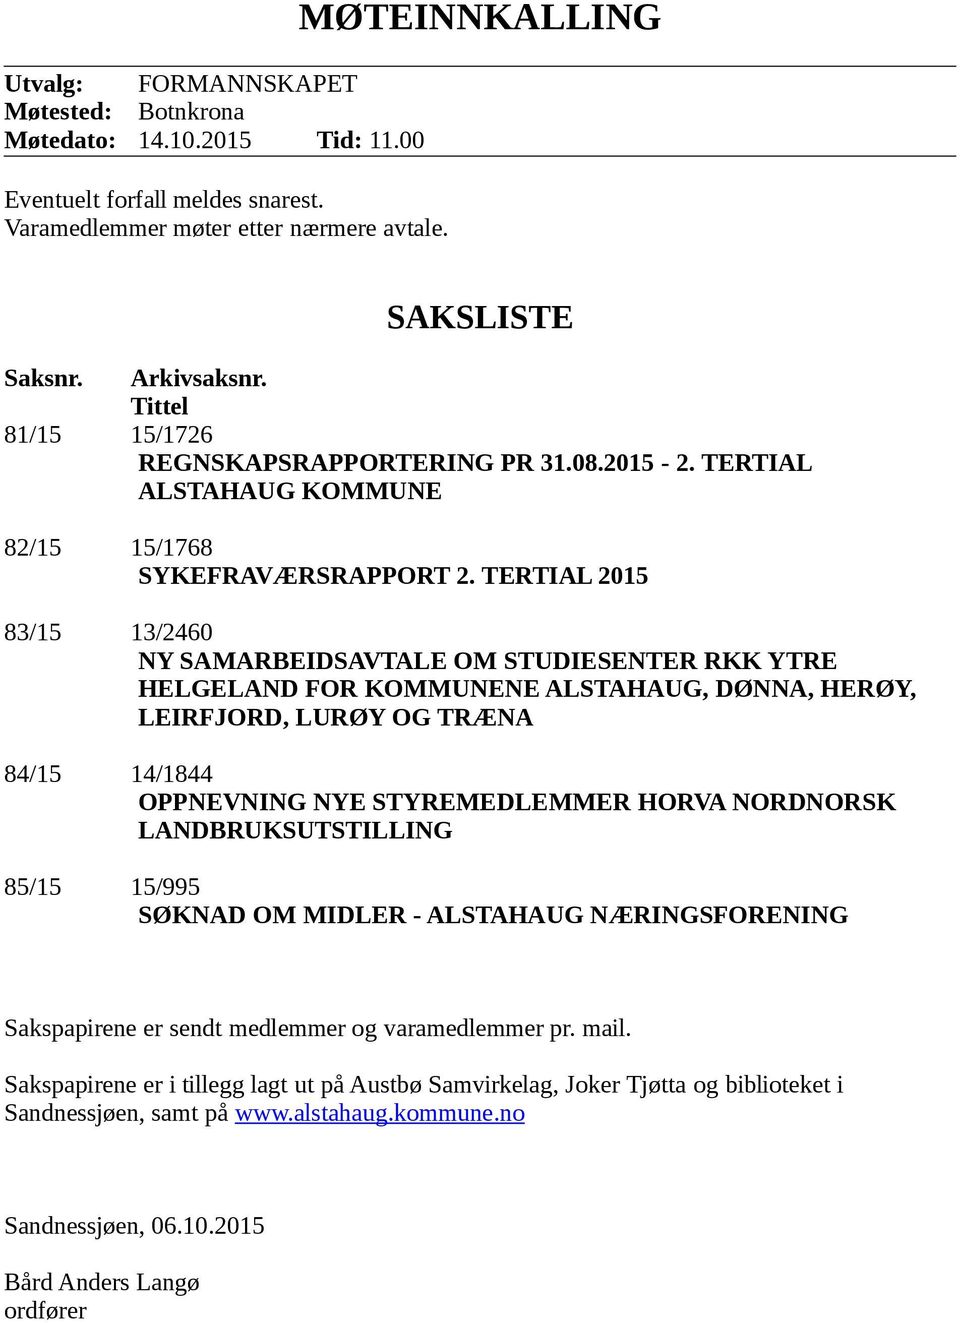 TERTIAL 2015 83/15 13/2460 NY SAMARBEIDSAVTALE OM STUDIESENTER RKK YTRE HELGELAND FOR KOMMUNENE ALSTAHAUG, DØNNA, HERØY, LEIRFJORD, LURØY OG TRÆNA 84/15 14/1844 OPPNEVNING NYE STYREMEDLEMMER HORVA